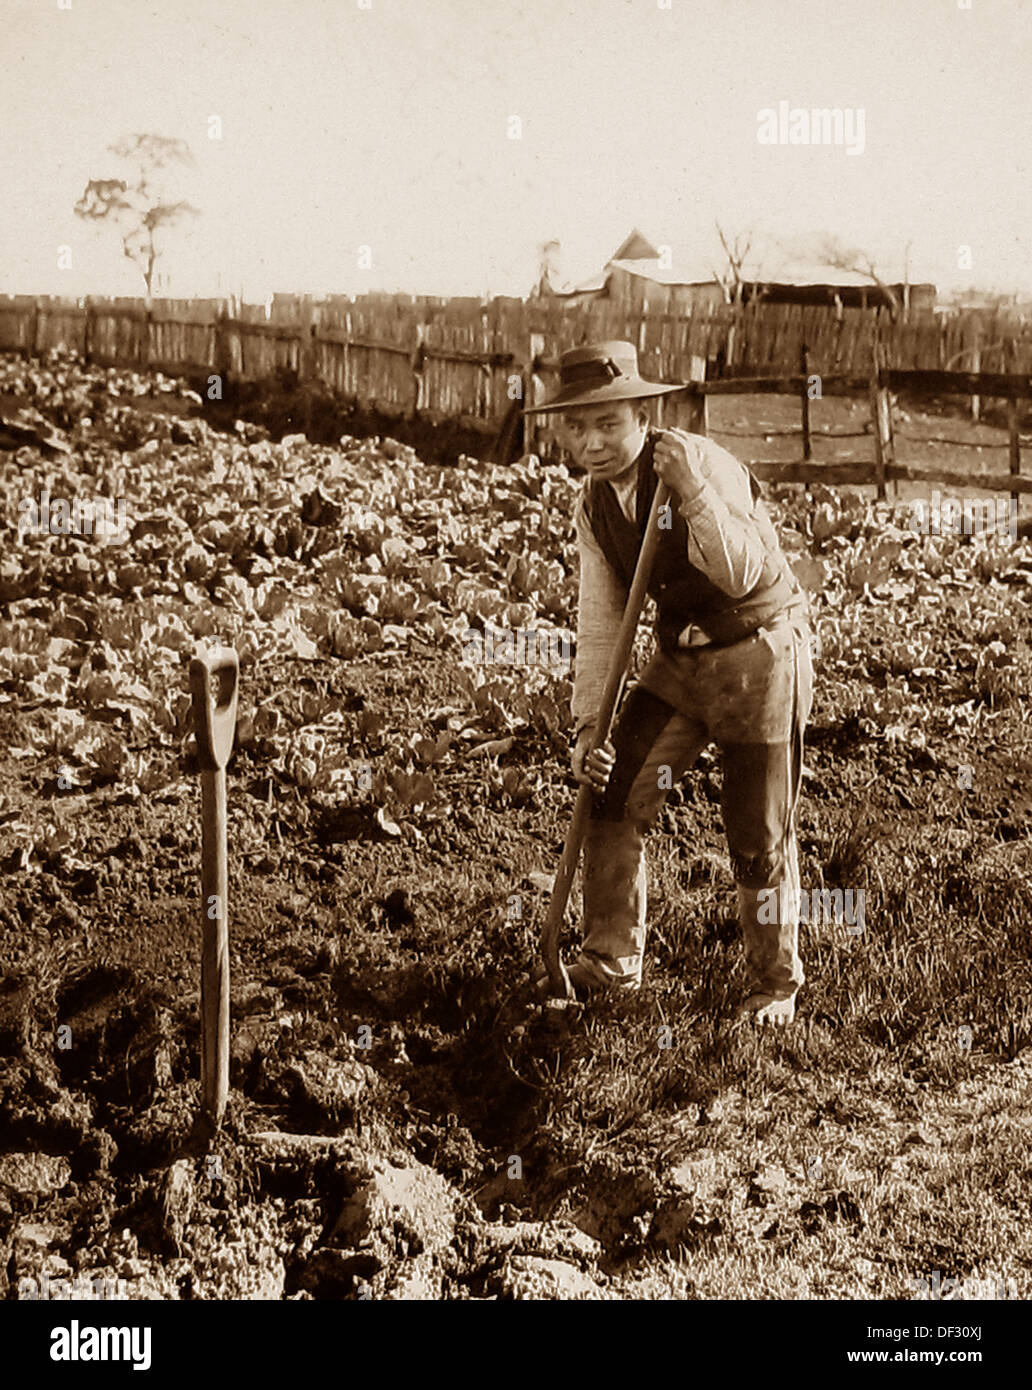 Queensland Australia - giardiniere cinese - periodo Vittoriano Foto Stock